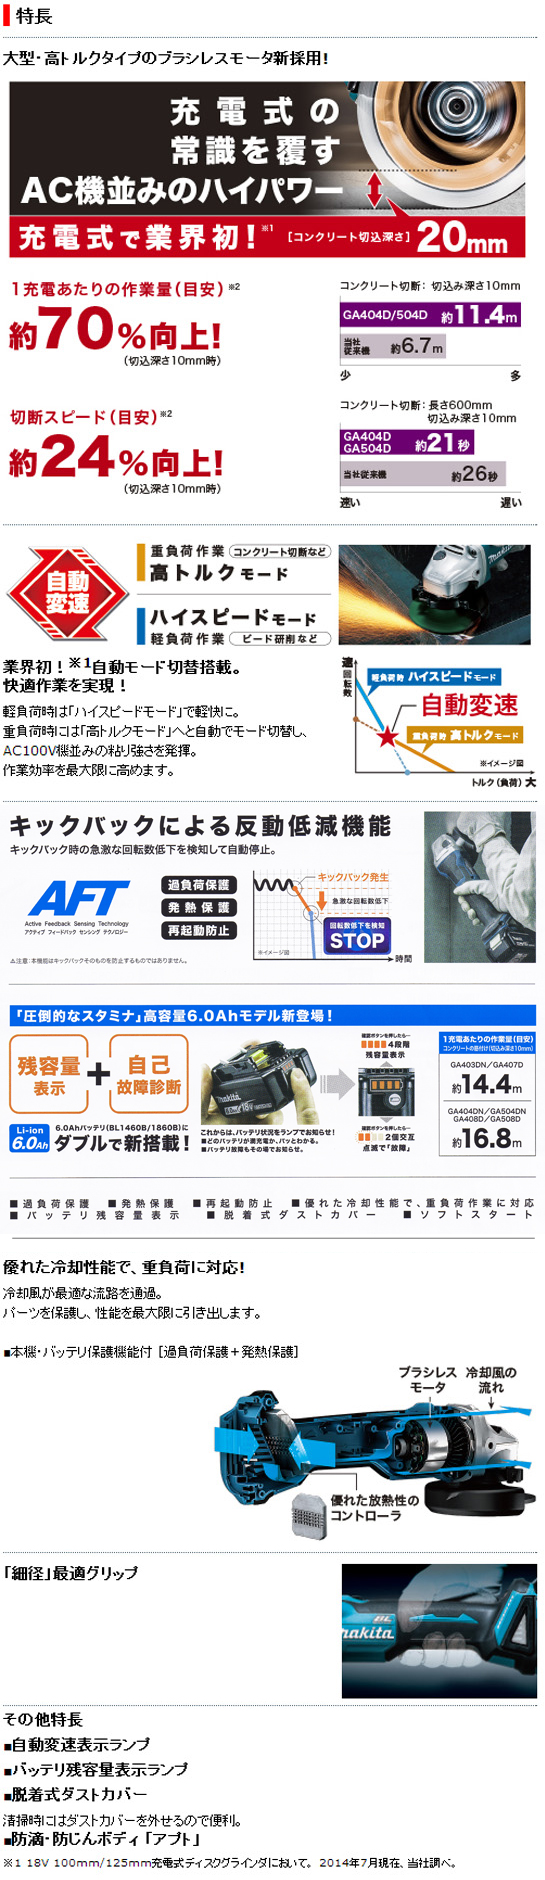 マキタ 18V充電式ディスクグラインダ125mm GA504D 電動工具・エアー工具・大工道具（電動工具＞グラインダ）